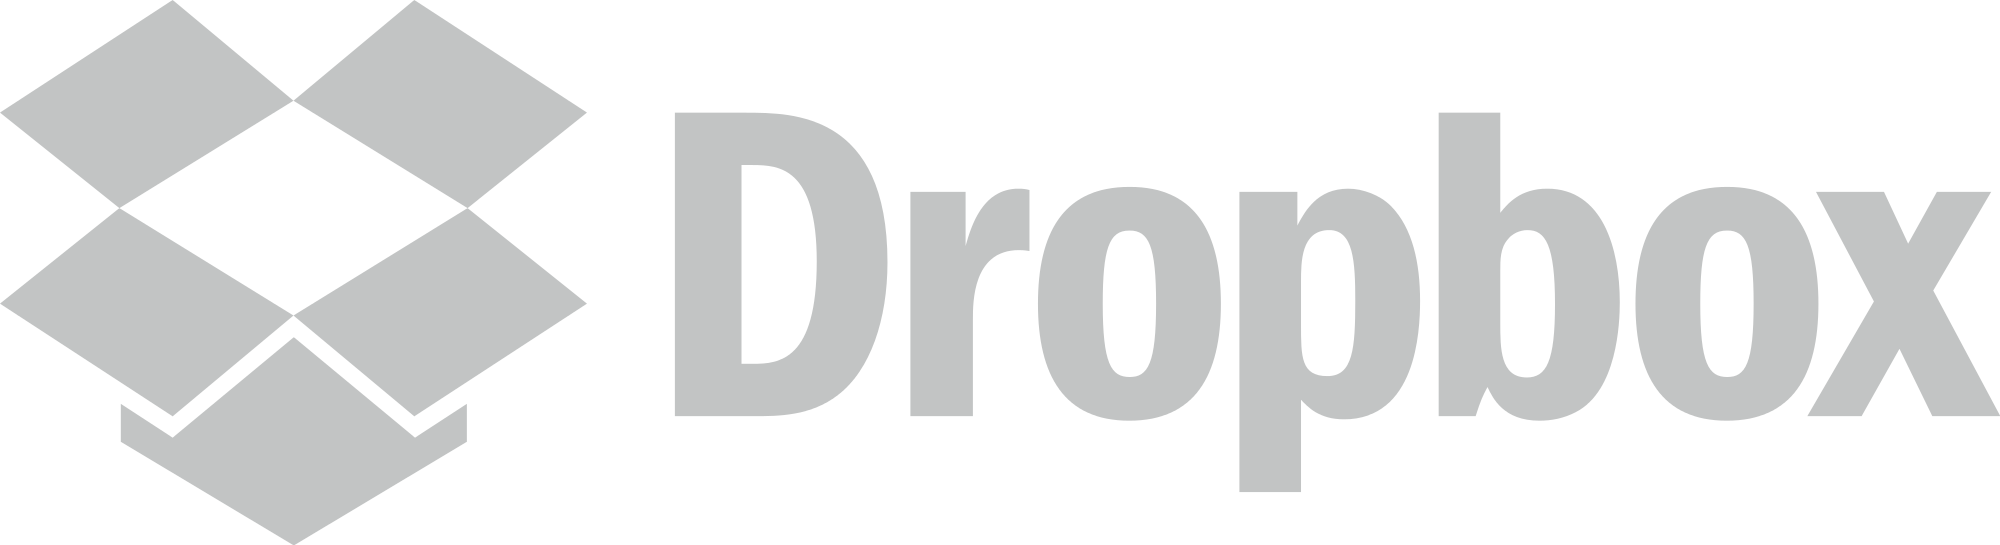 Dropbox-grey